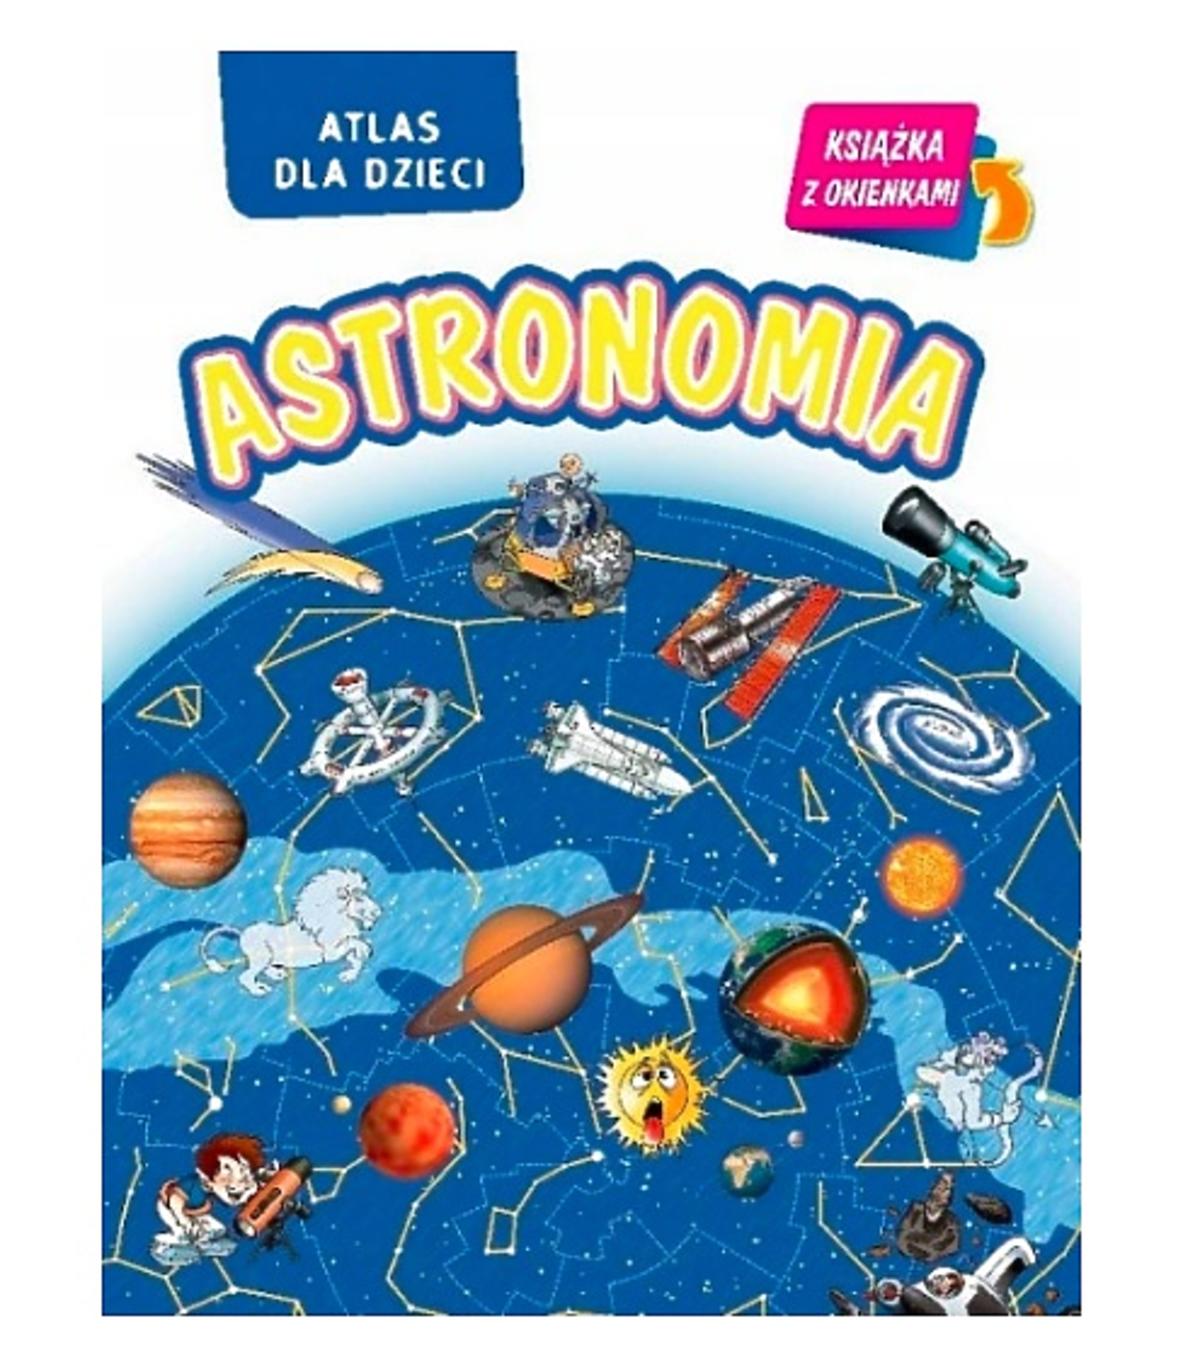 Książka o kosmosie Astronomia. Atlas dla dzieci